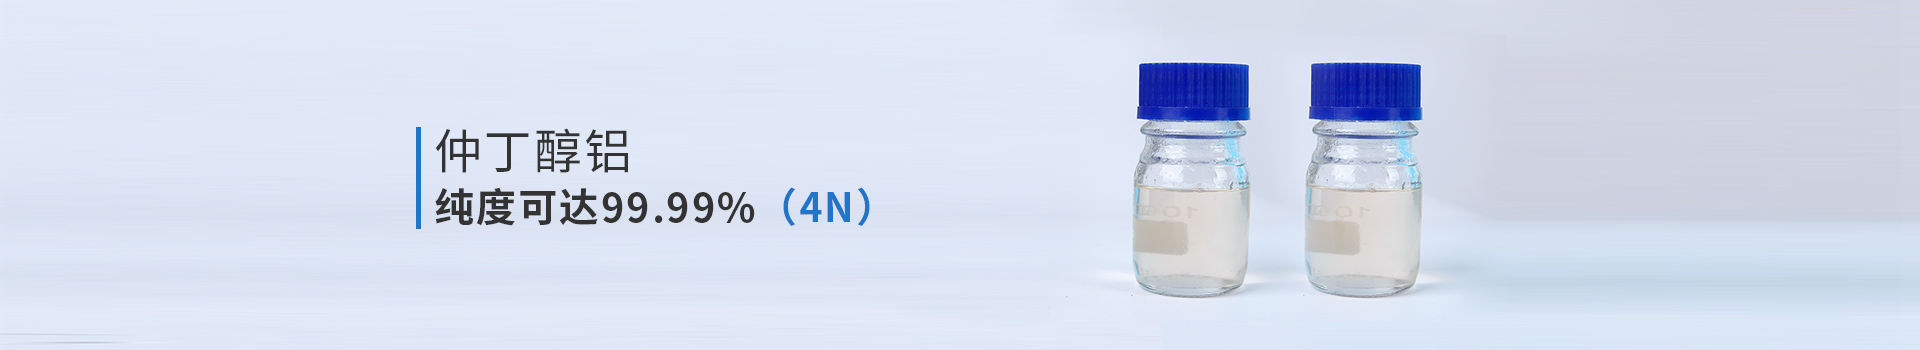 中天利仲丁醇铝纯度可达99.99%